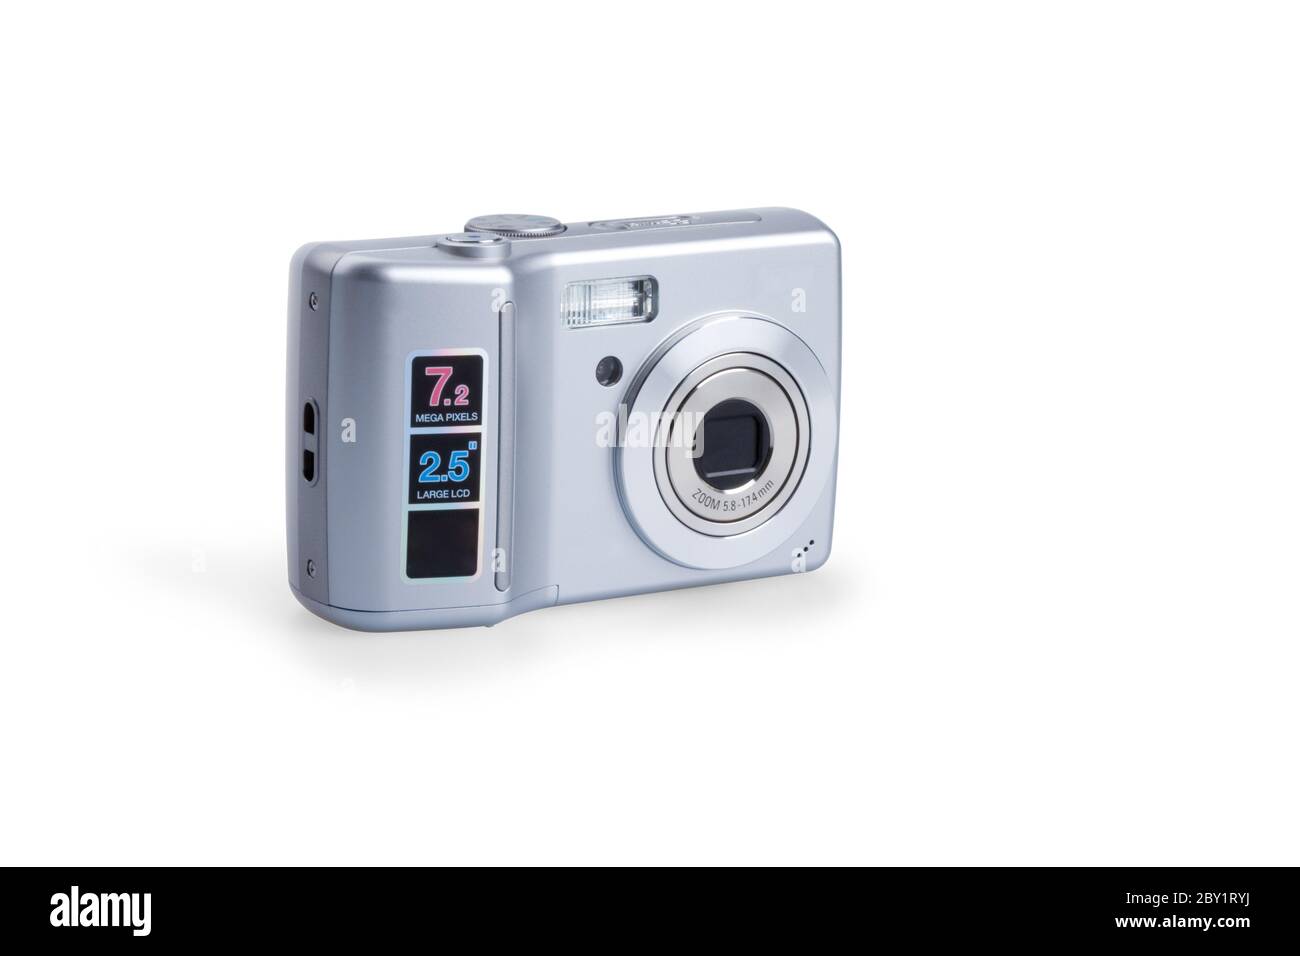 photo camera isolated on white Stock Photo